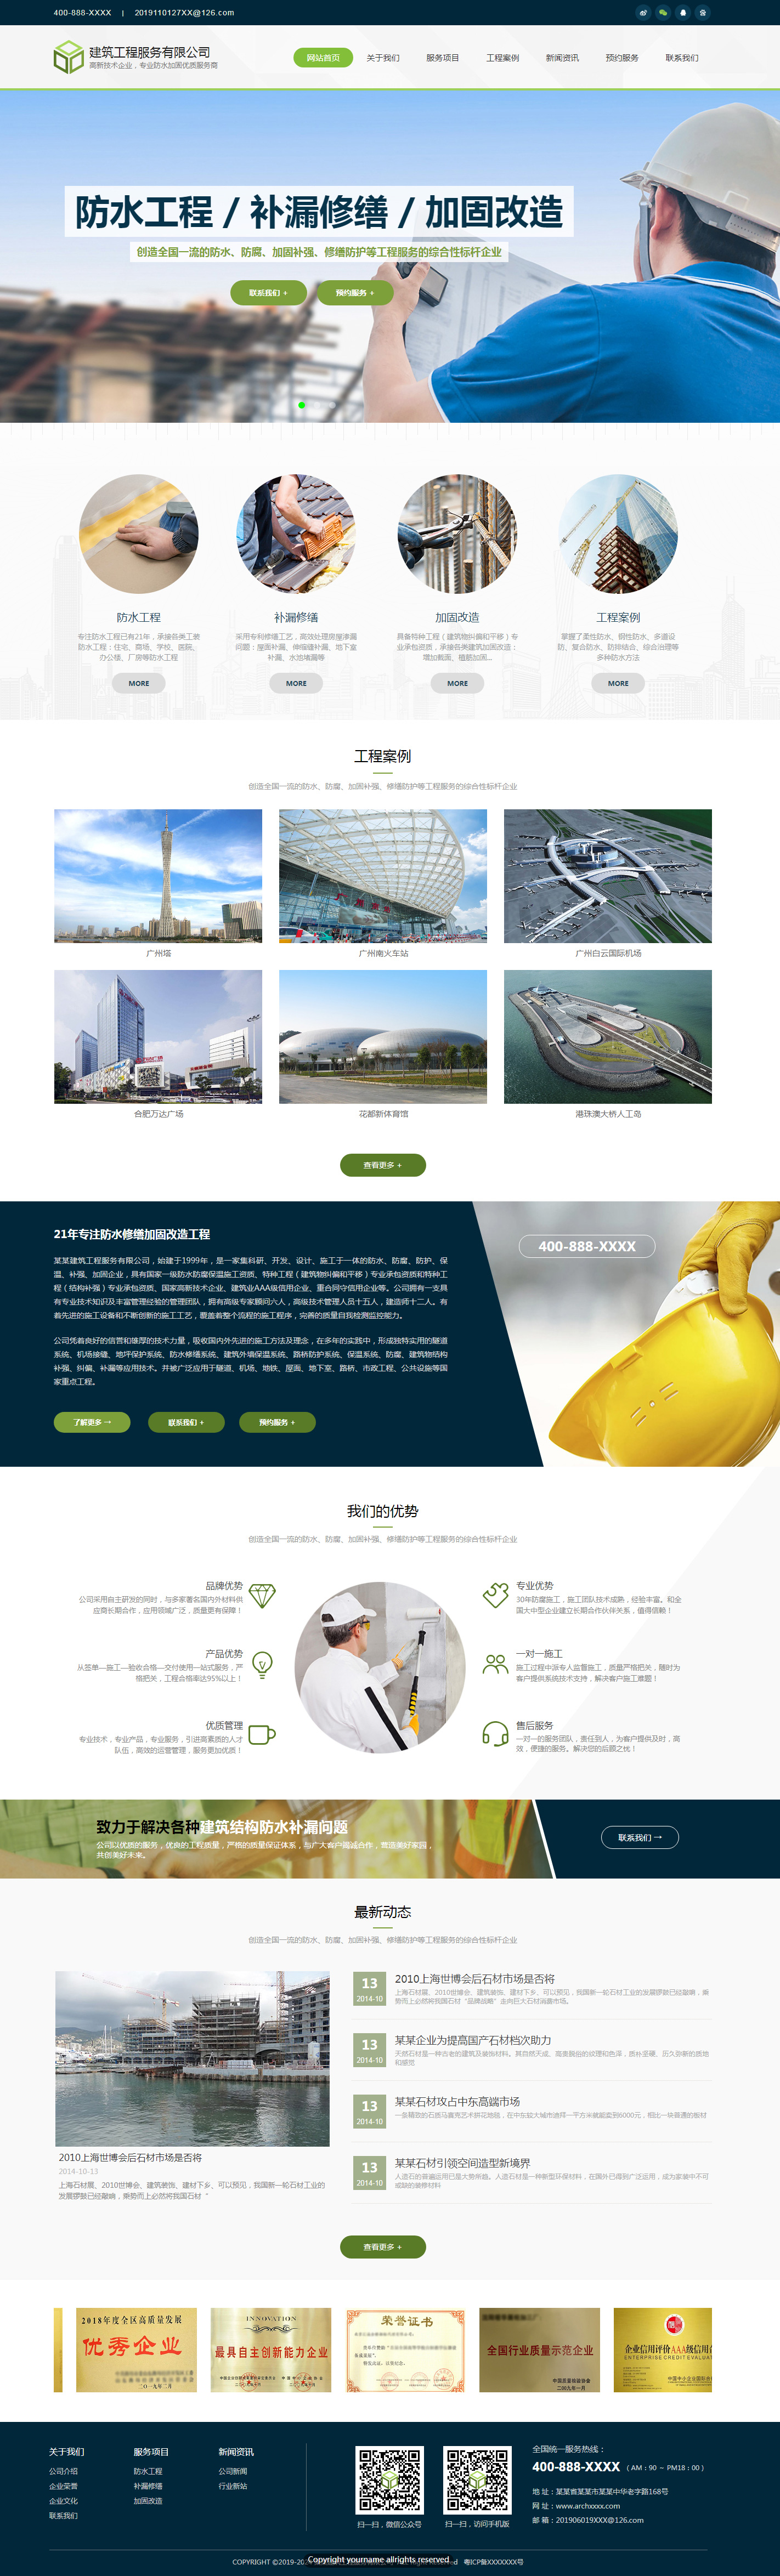 企业网站精美模板-architecture-1125268